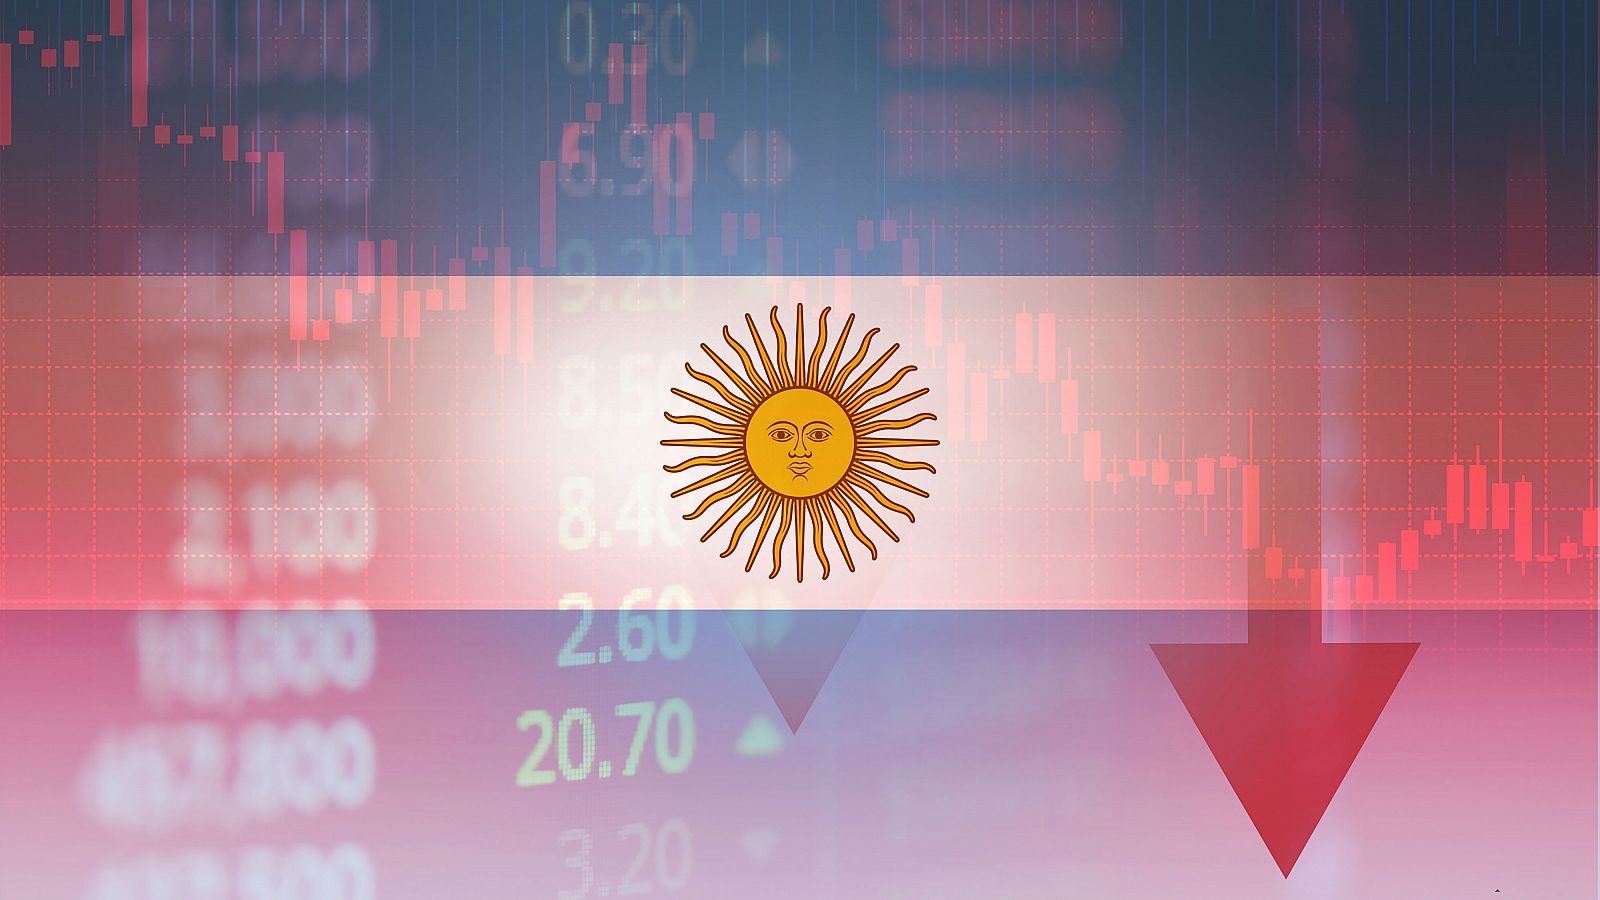 El dólar turista impide a muchos argentinos viajar al extranjero - RTVE.es